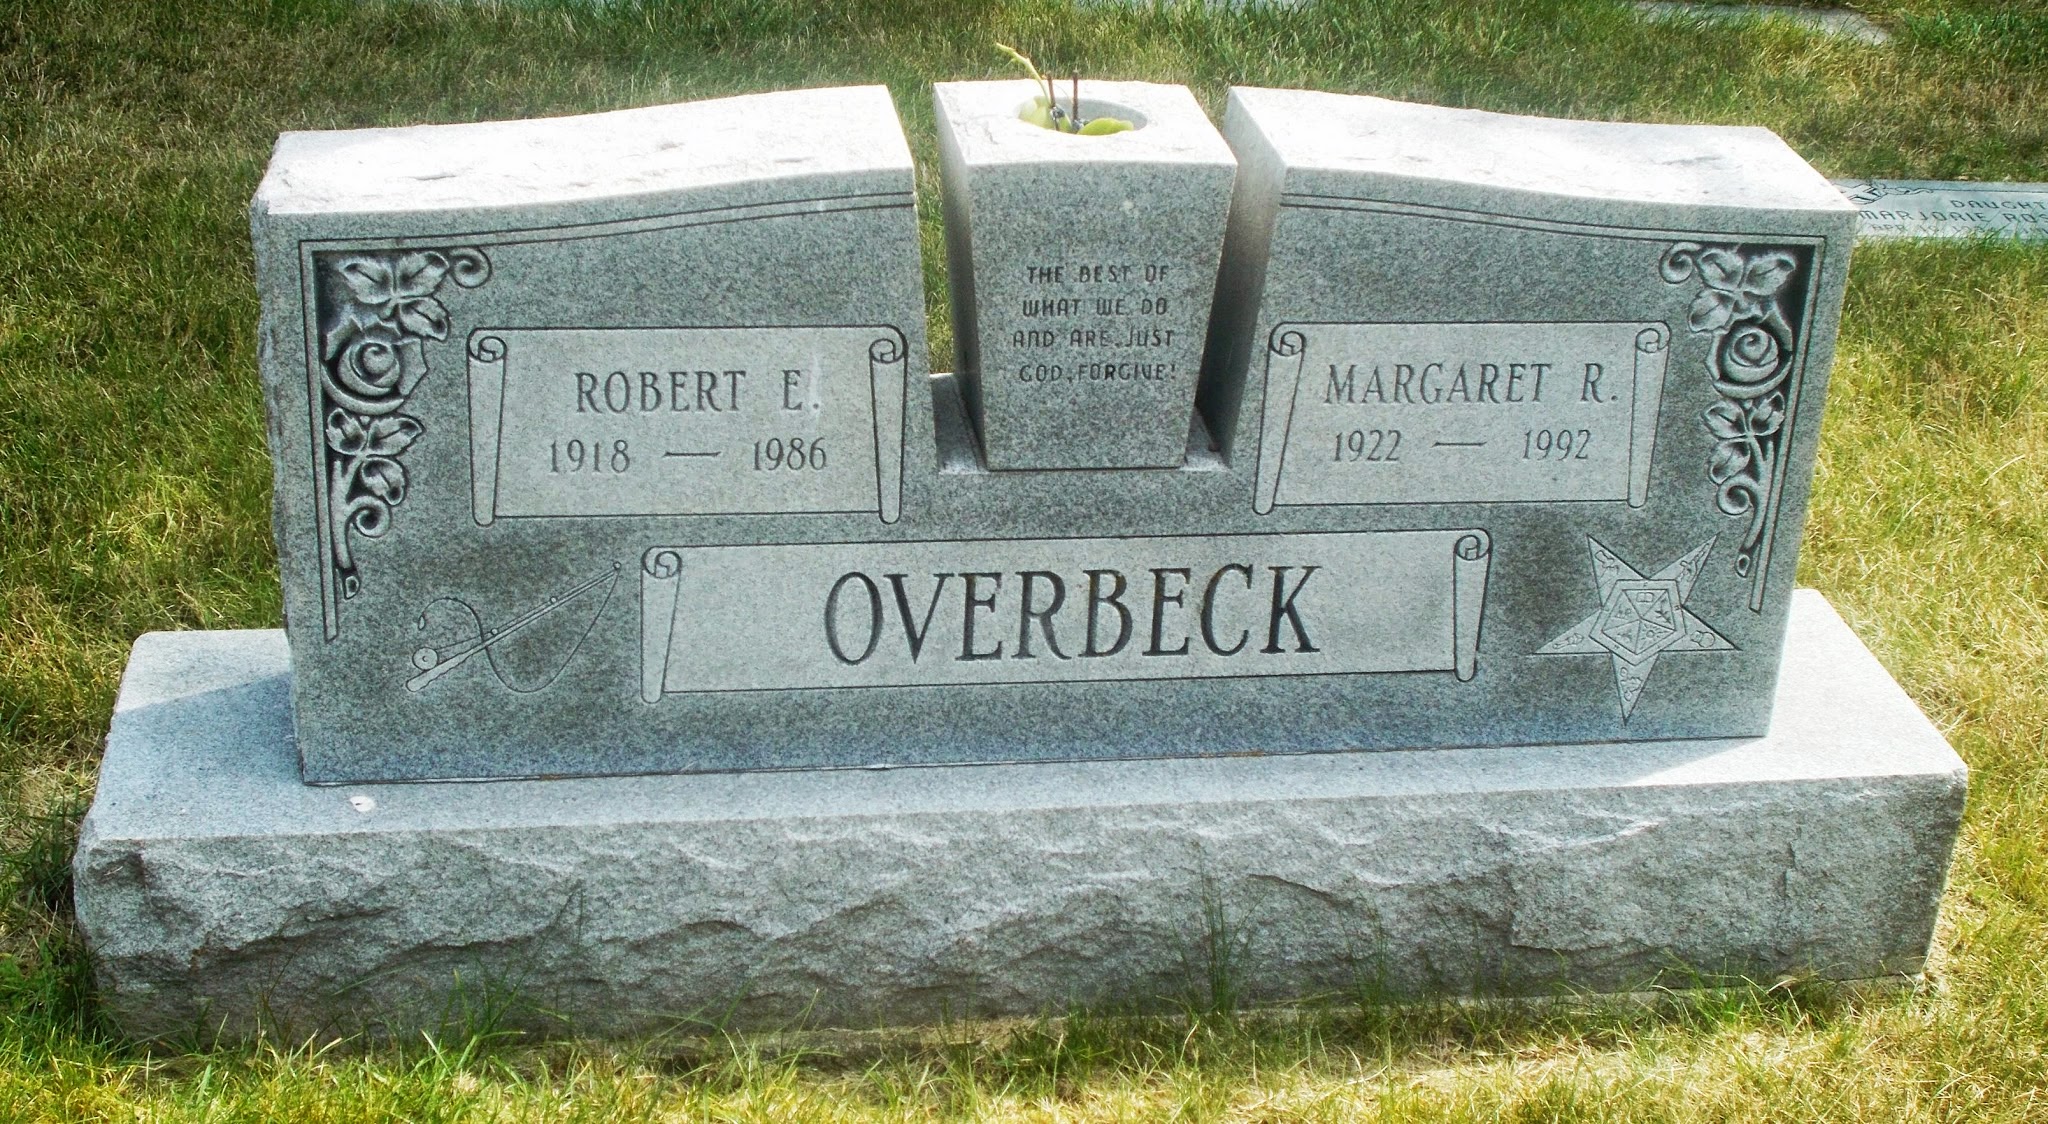 Margaret R Overbeck